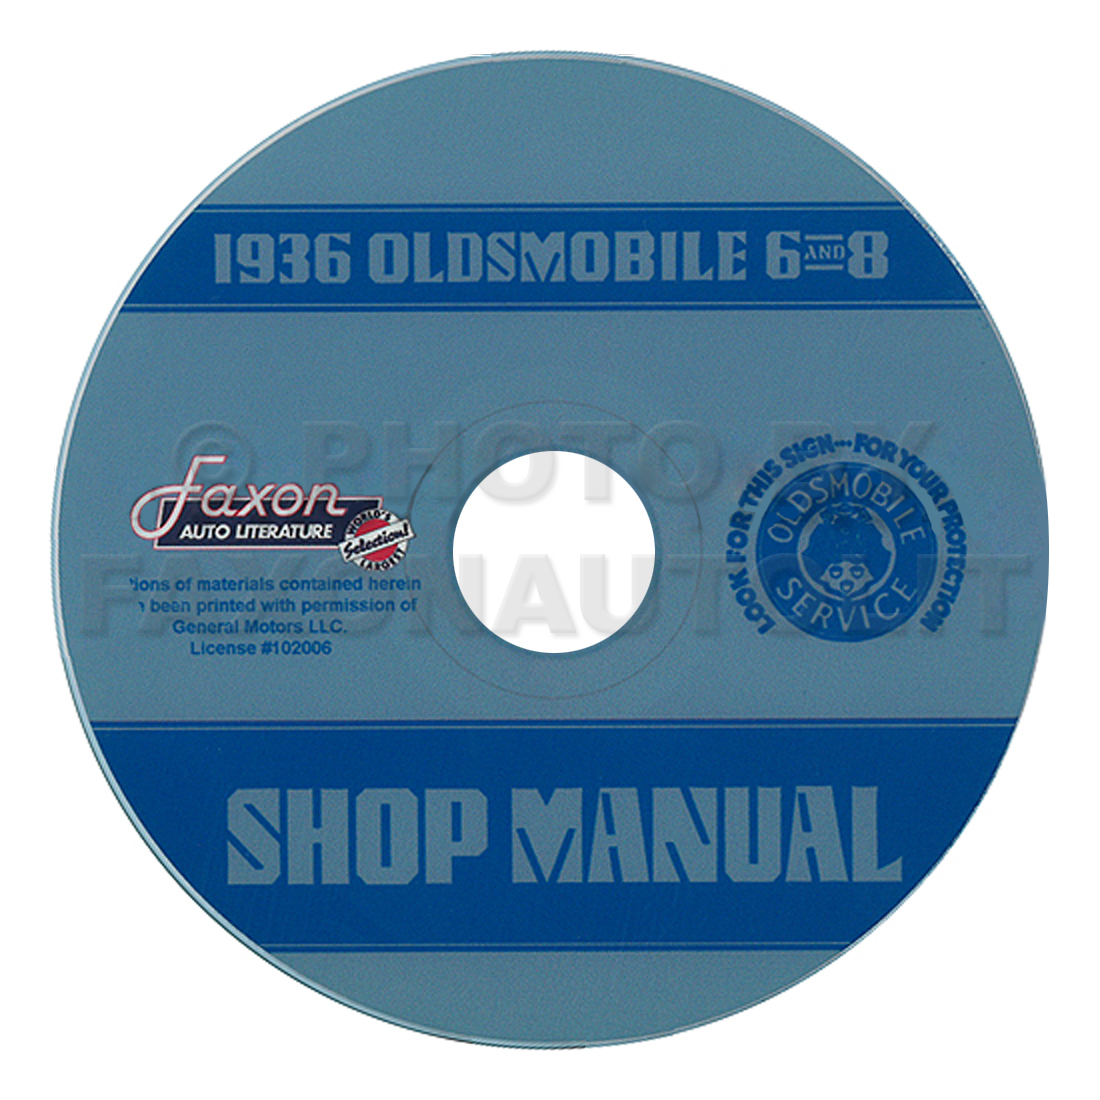 1936 Oldsmobile 6 and 8 CD-ROM Repair Shop Manual